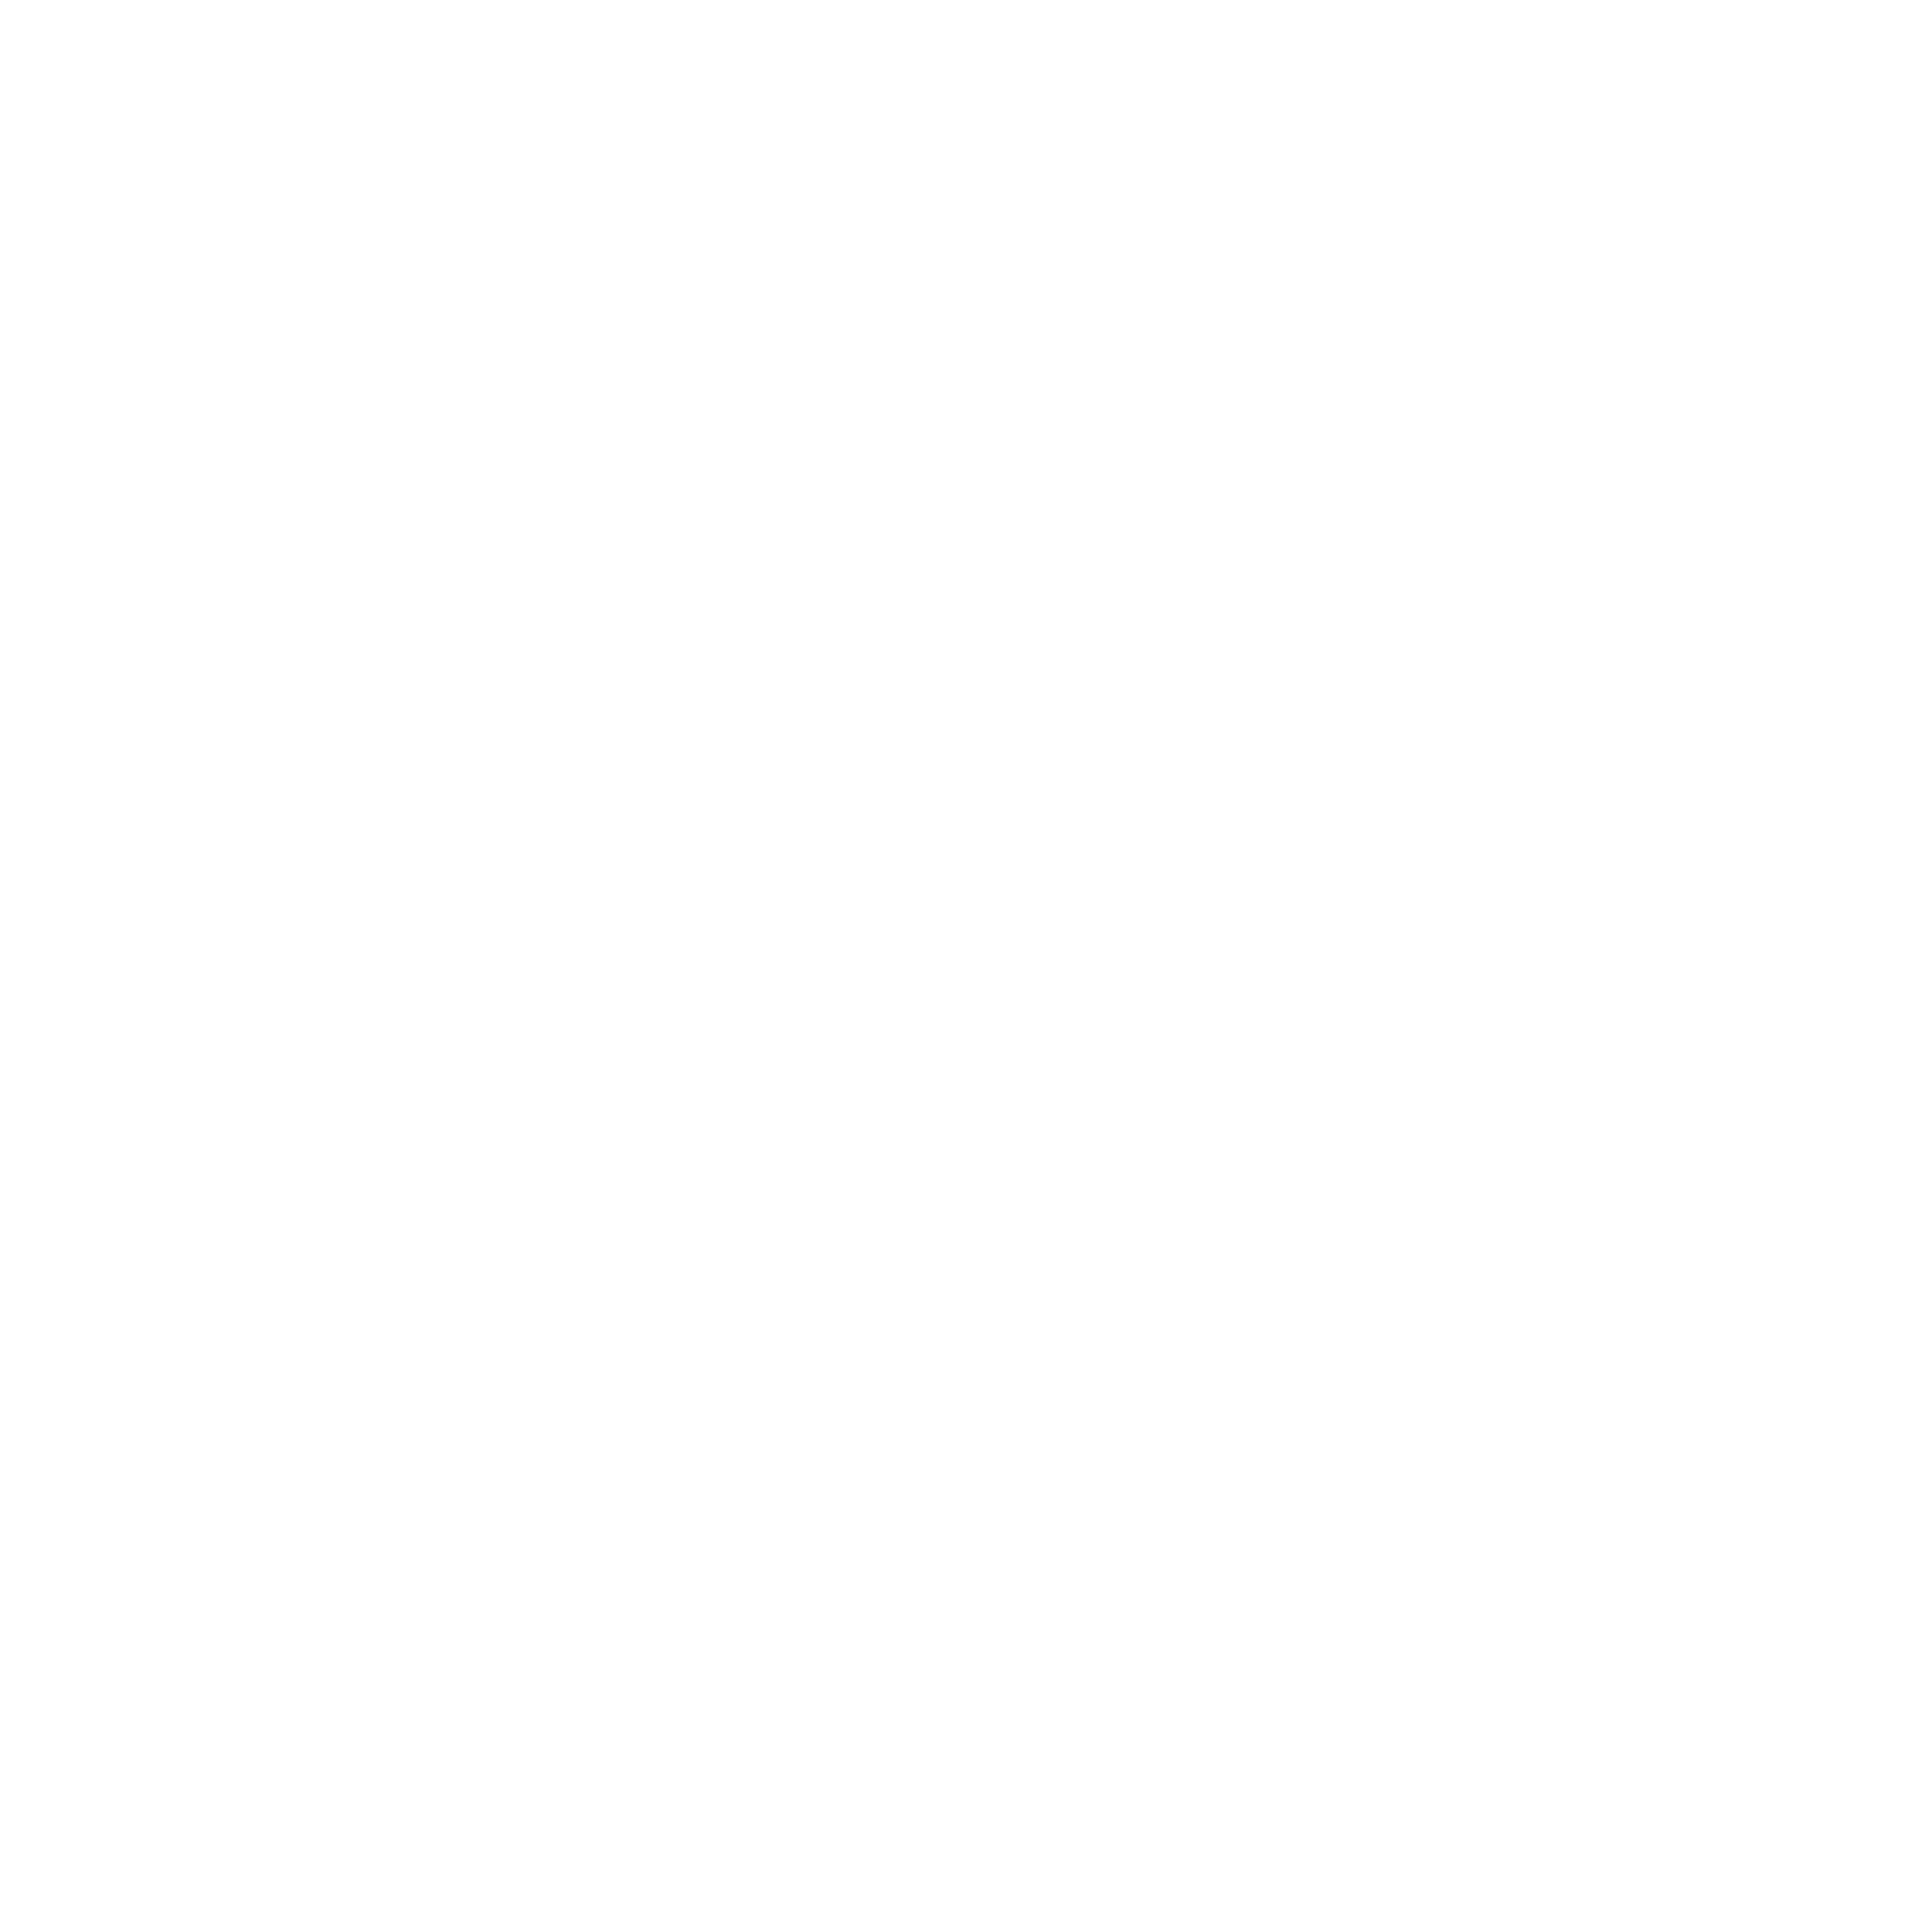 Strona Związku 5-tych i 29-tych Drużyn Harcerskich "BRACTWO"